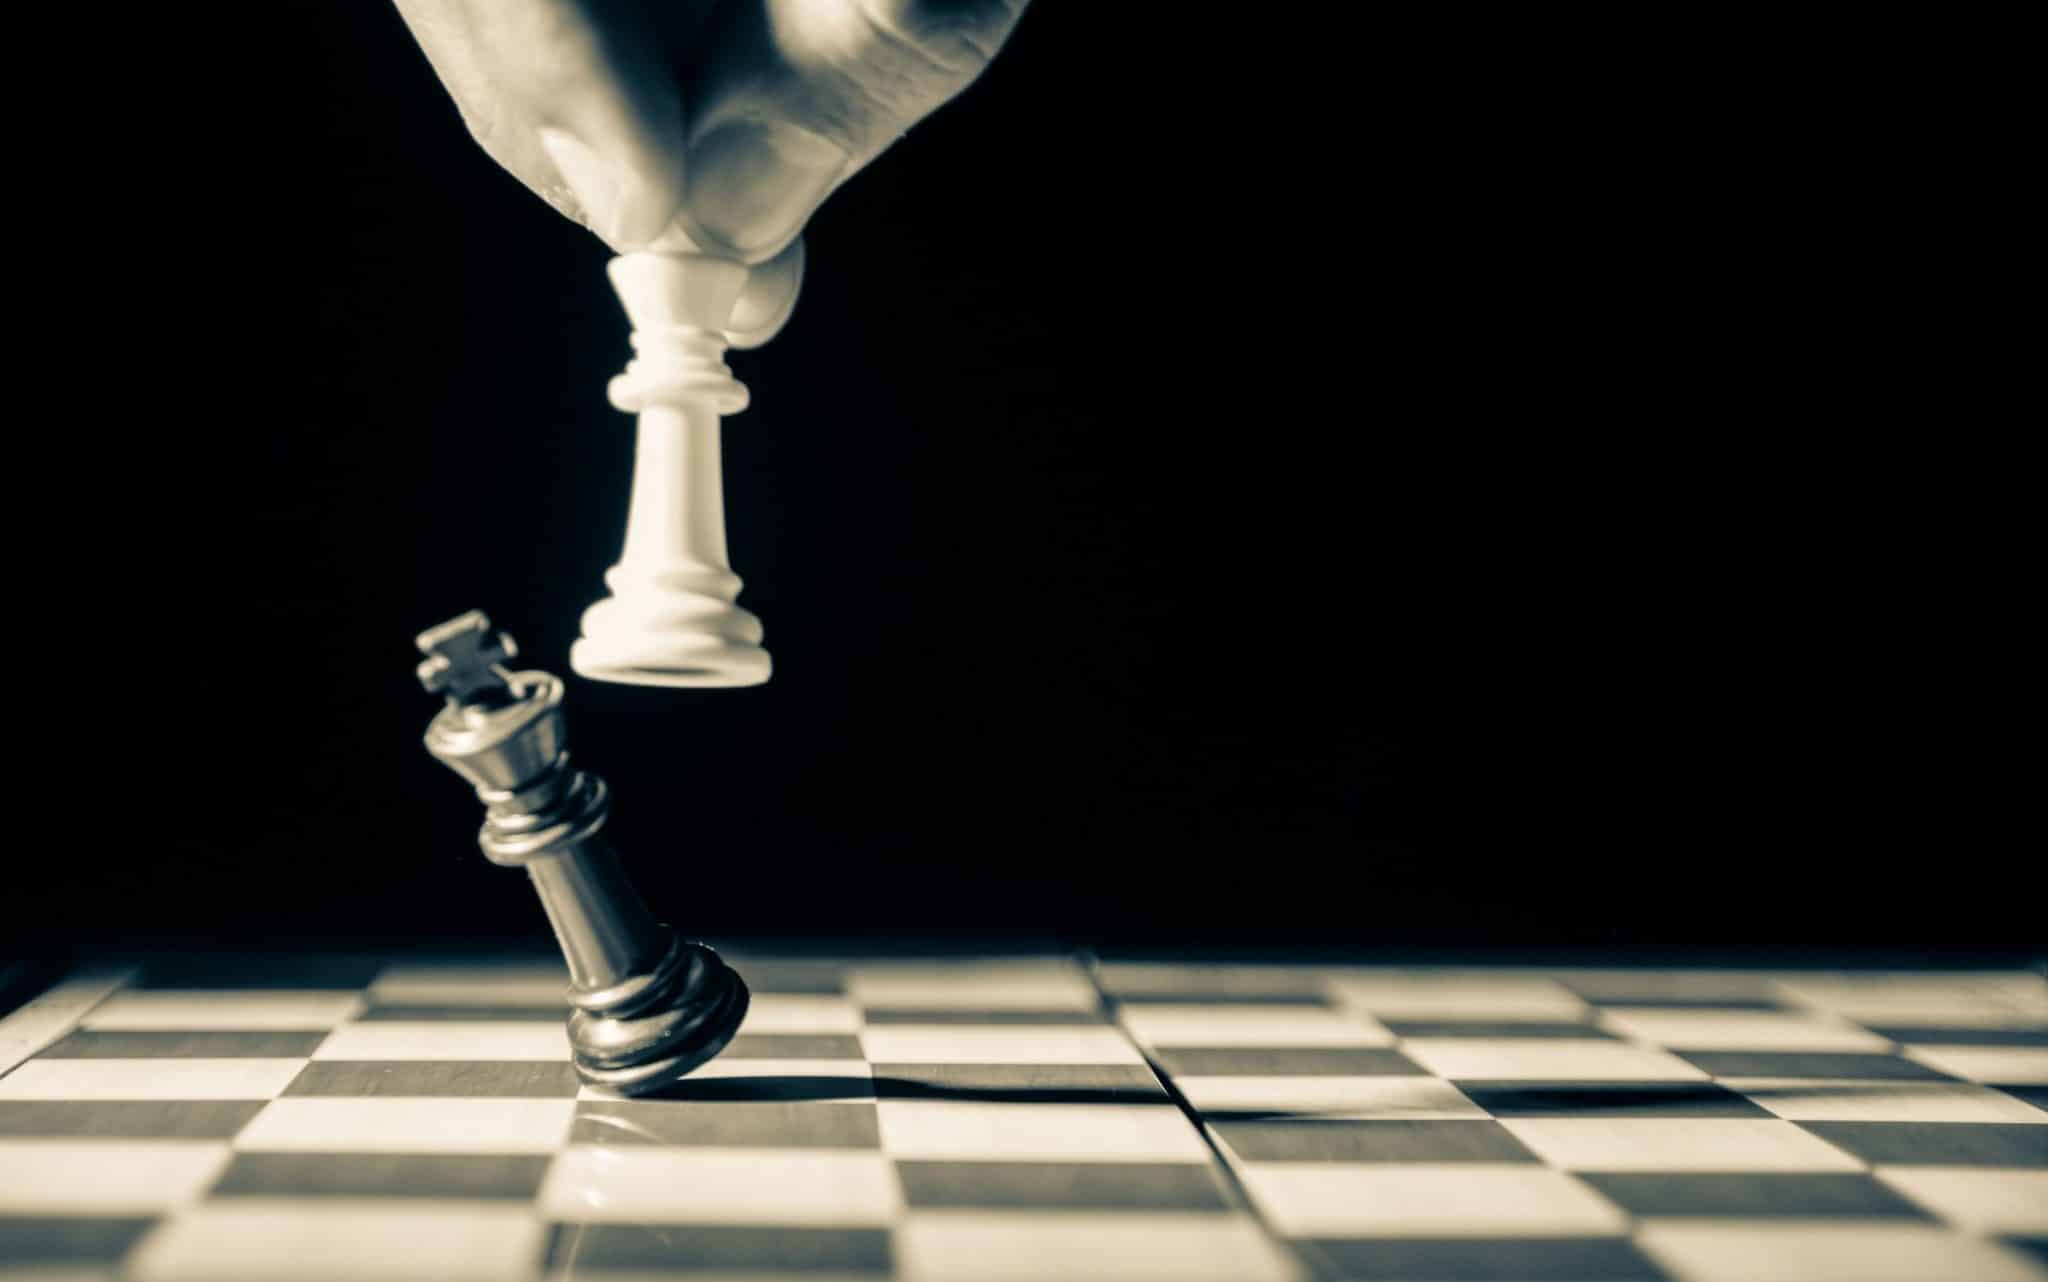 Duas peças de xadrez. Um homem manipula uma - branca - que derruba uma preta.